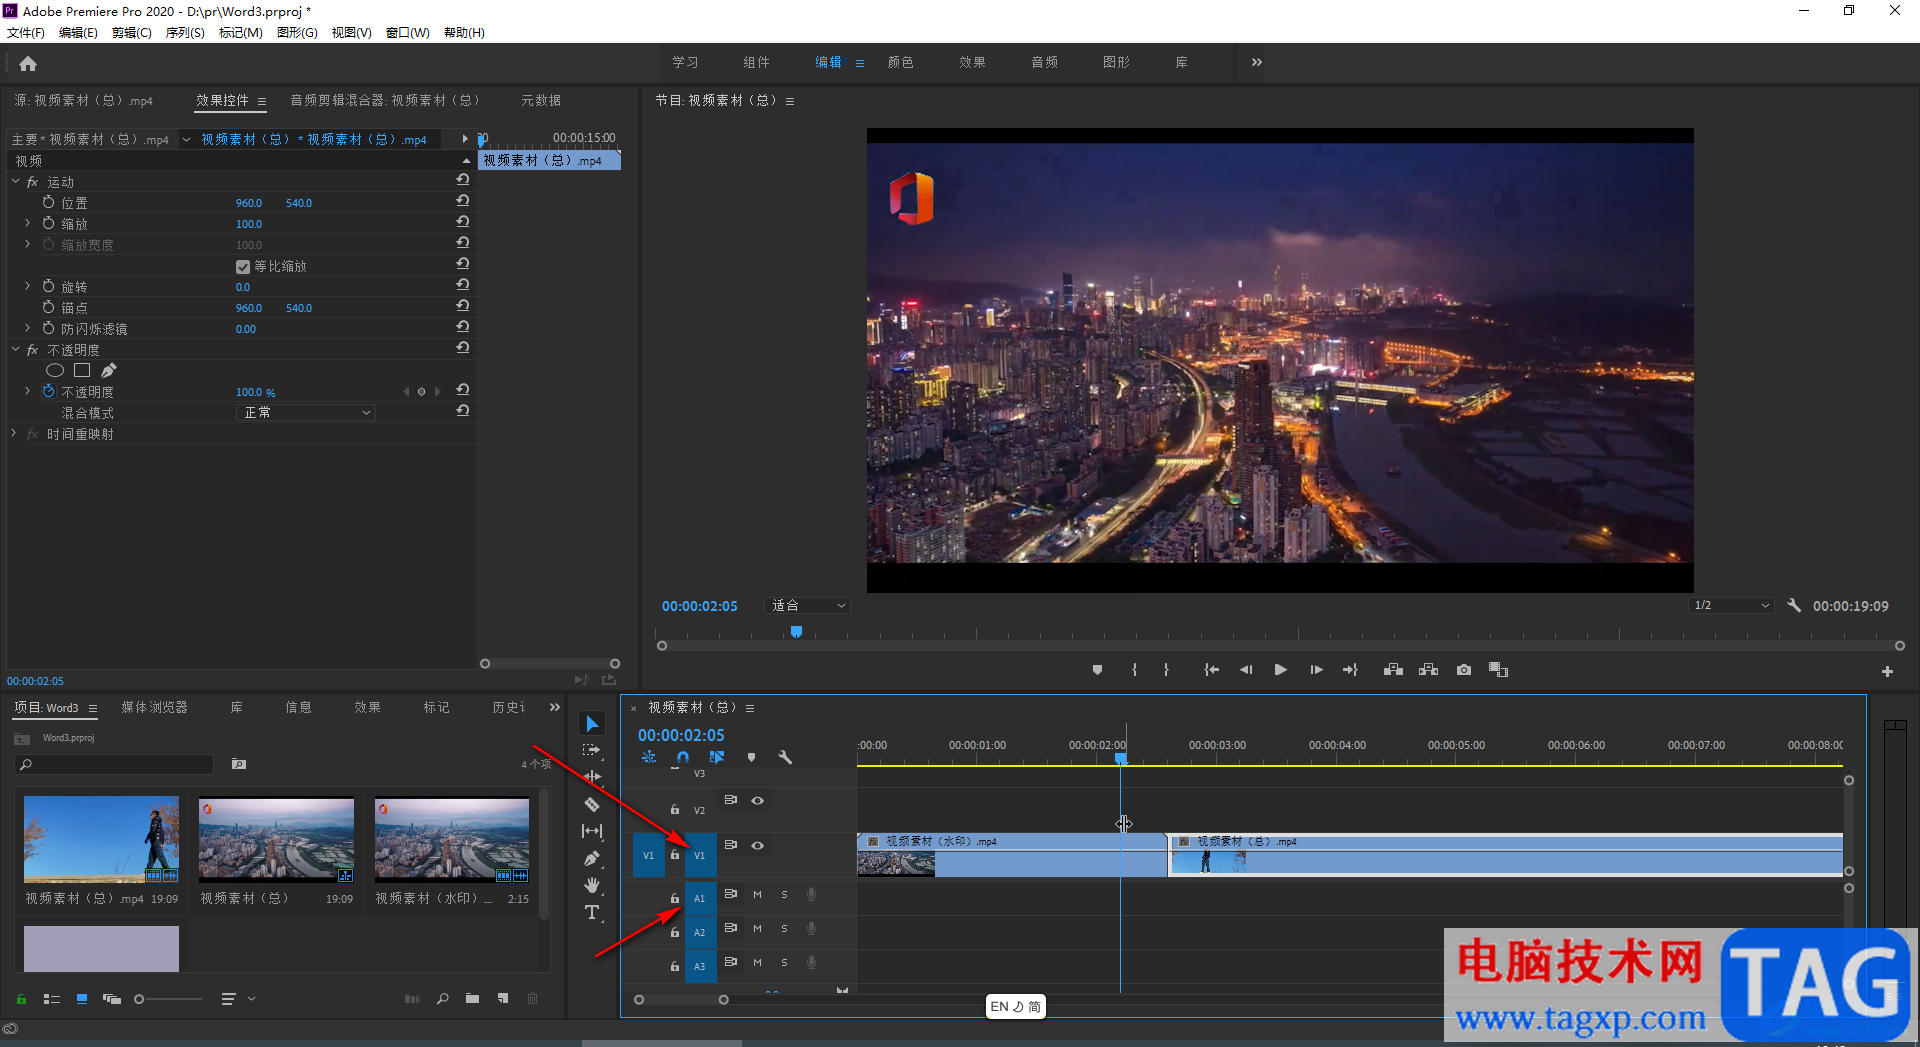 Adobe premiere设置在时间轴中只显示视频的方法教程